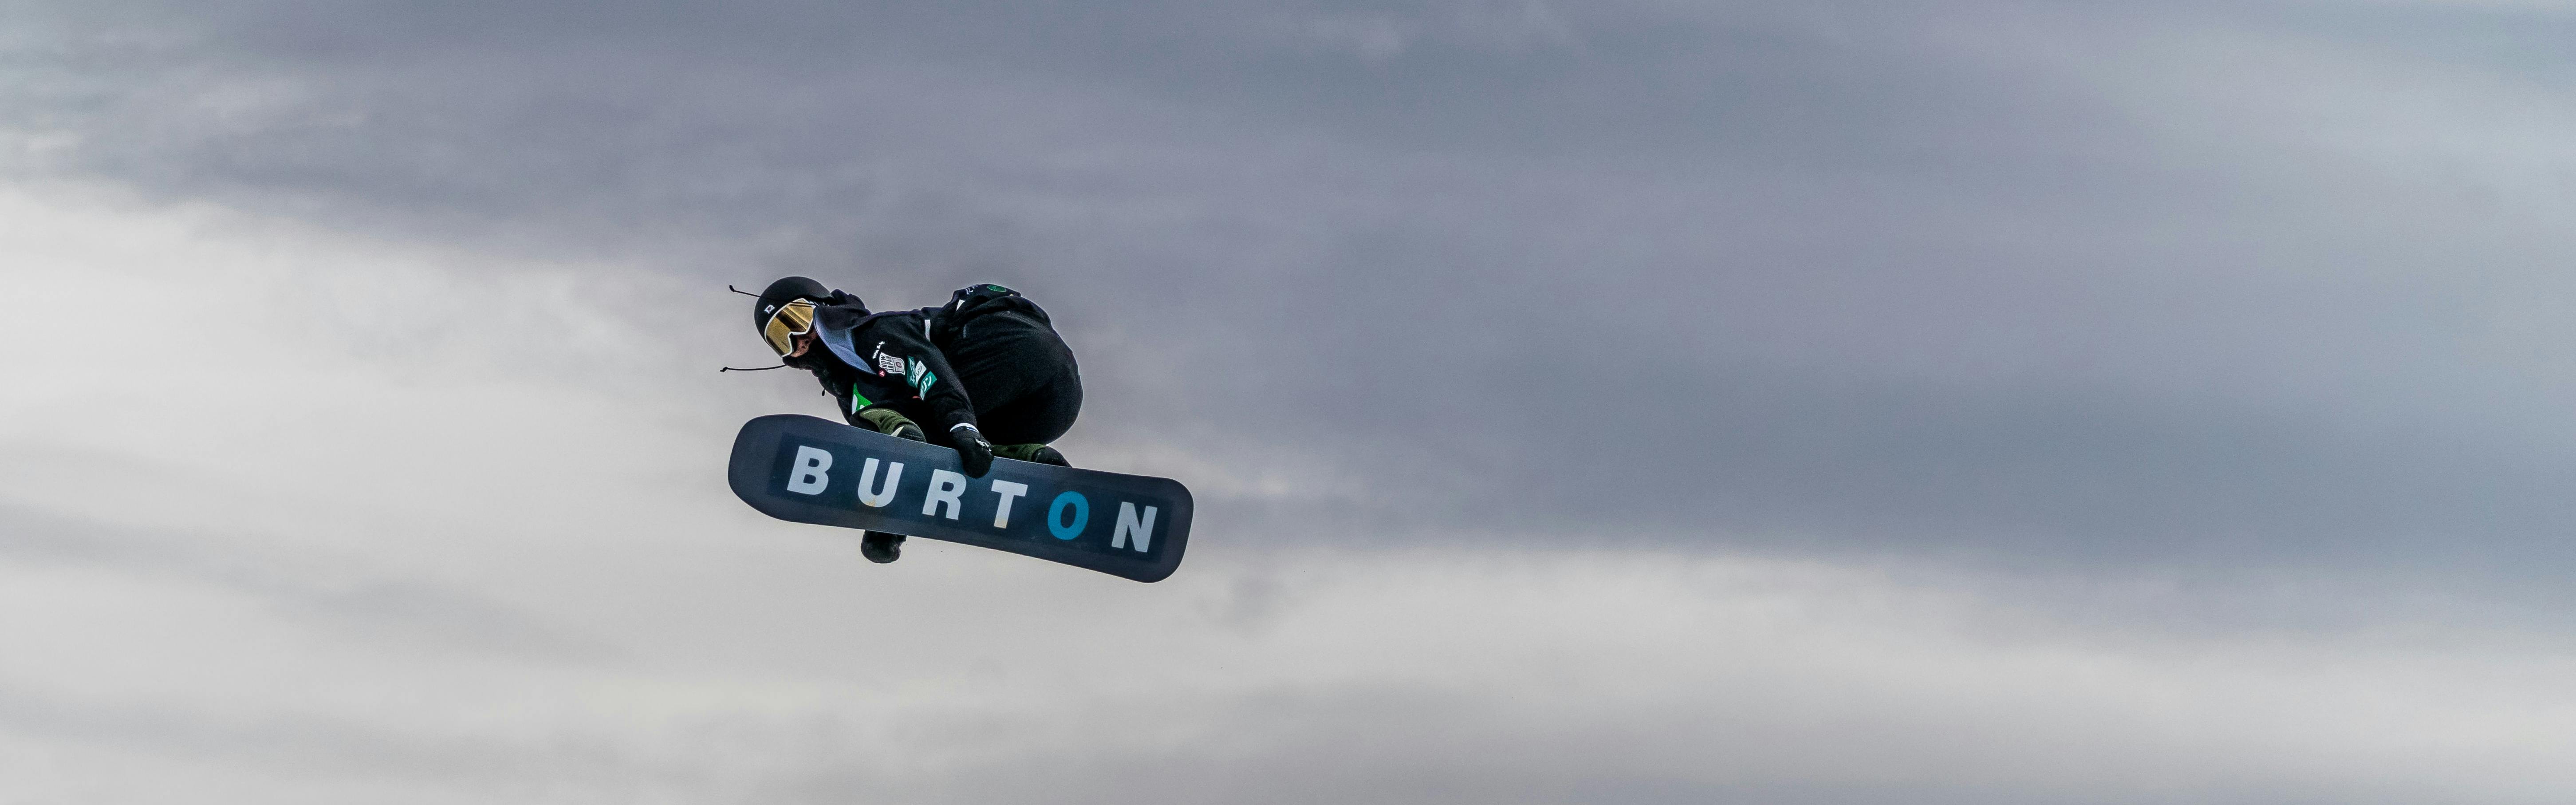 A snowboarder flies through the air